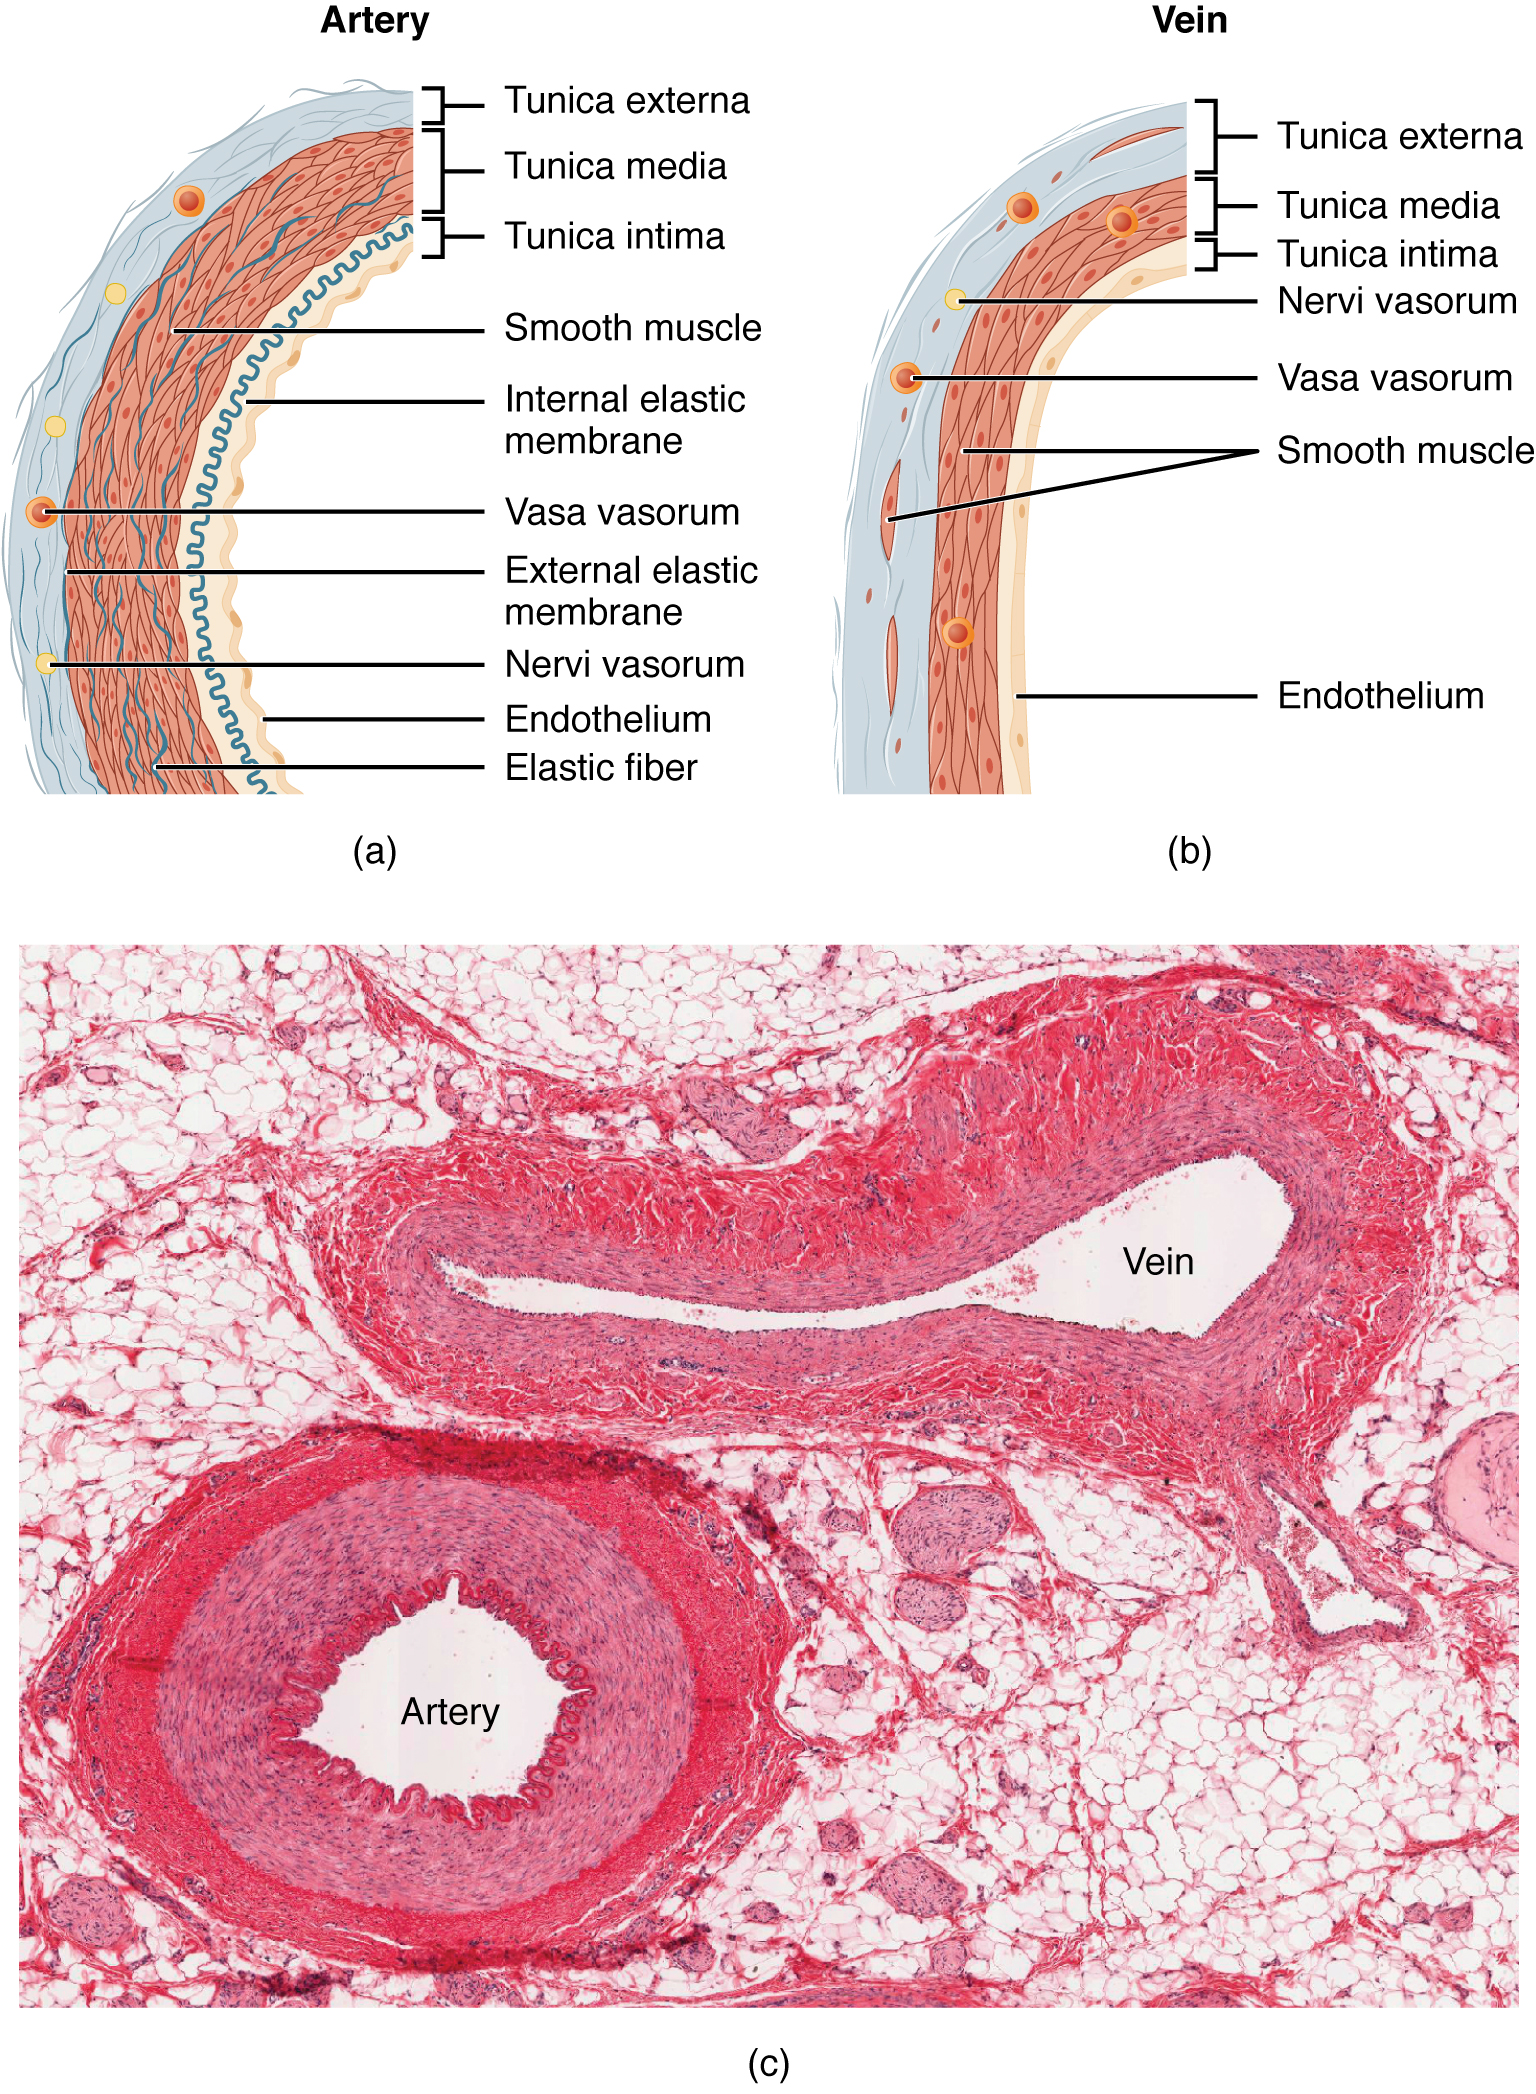 O painel superior esquerdo desta figura mostra a ultraestrutura de uma artéria e o painel superior direito mostra a ultraestrutura de uma veia. O painel inferior mostra uma micrografia com as seções transversais de uma artéria e uma veia.